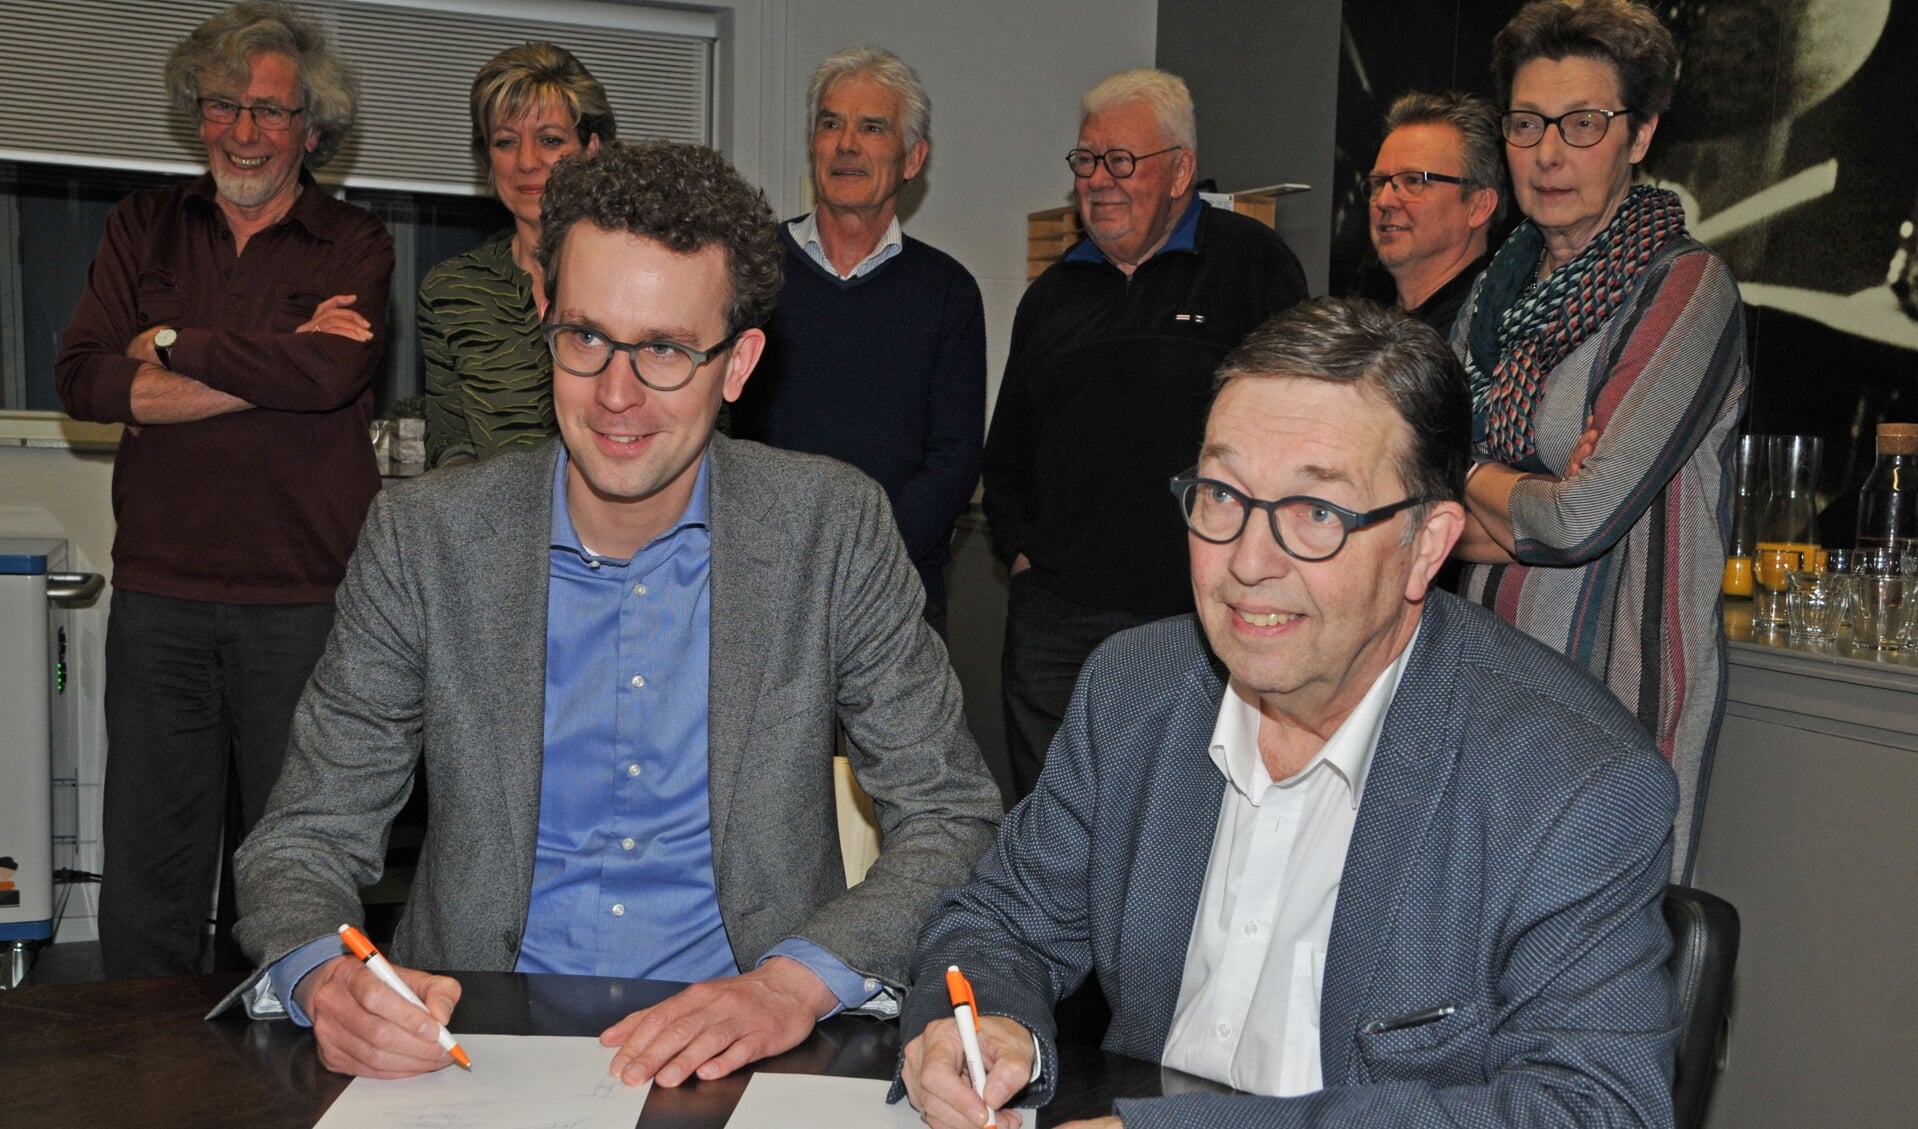 De wethouders Martijn van der Putten en Cor Vervoort zetten hun handtekening. 